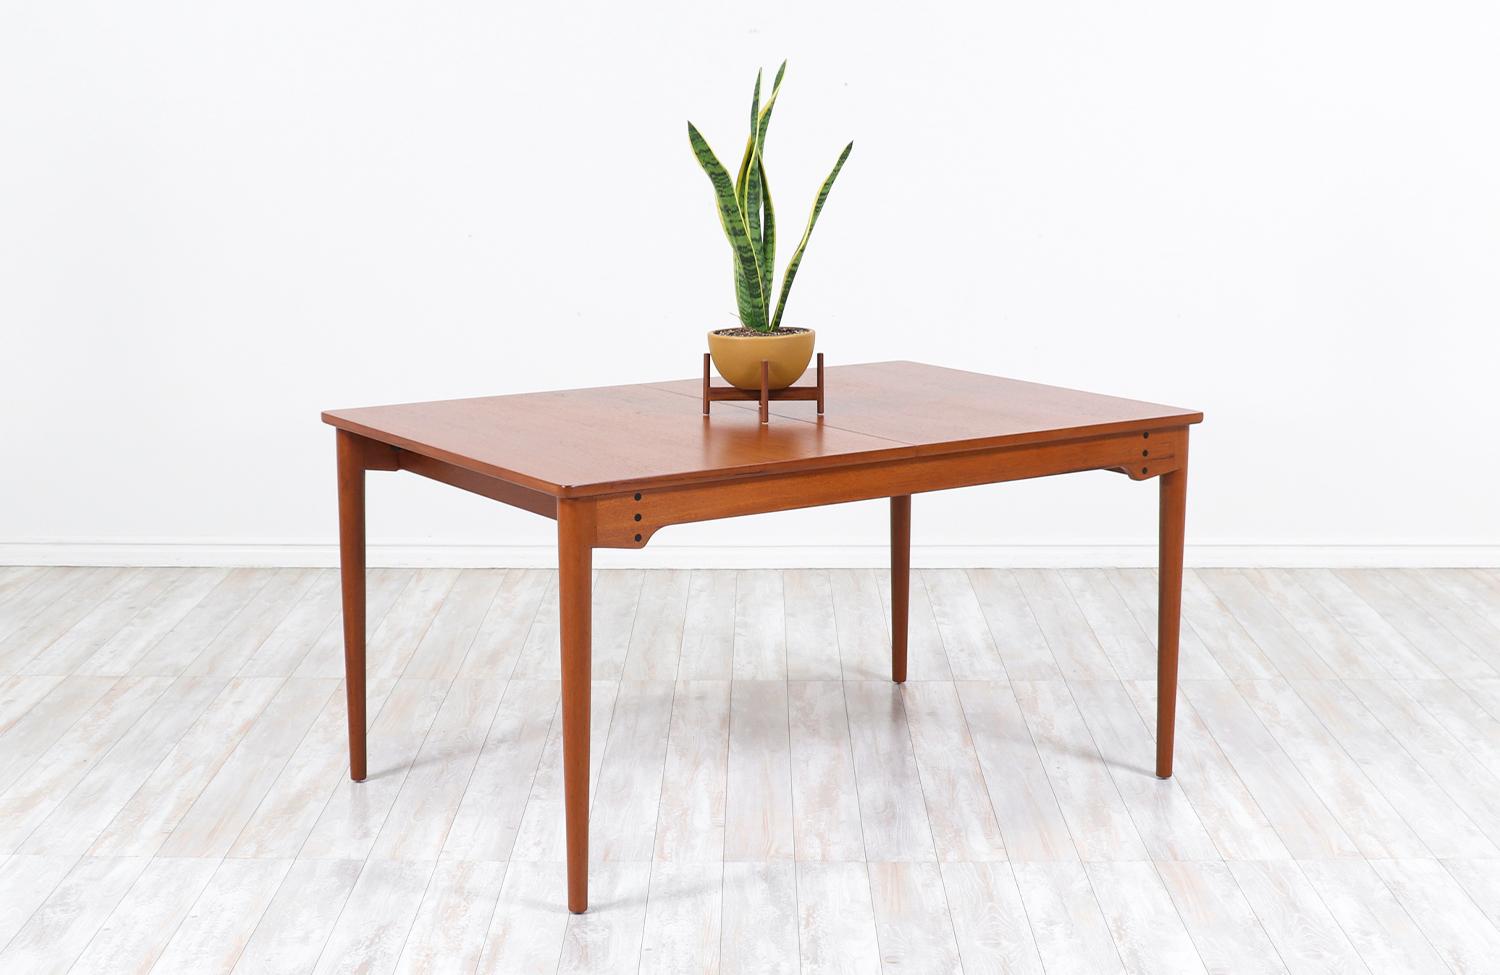 Mid-20th Century Finn Juhl Model-B065 Teak Dining Table for Bovirke